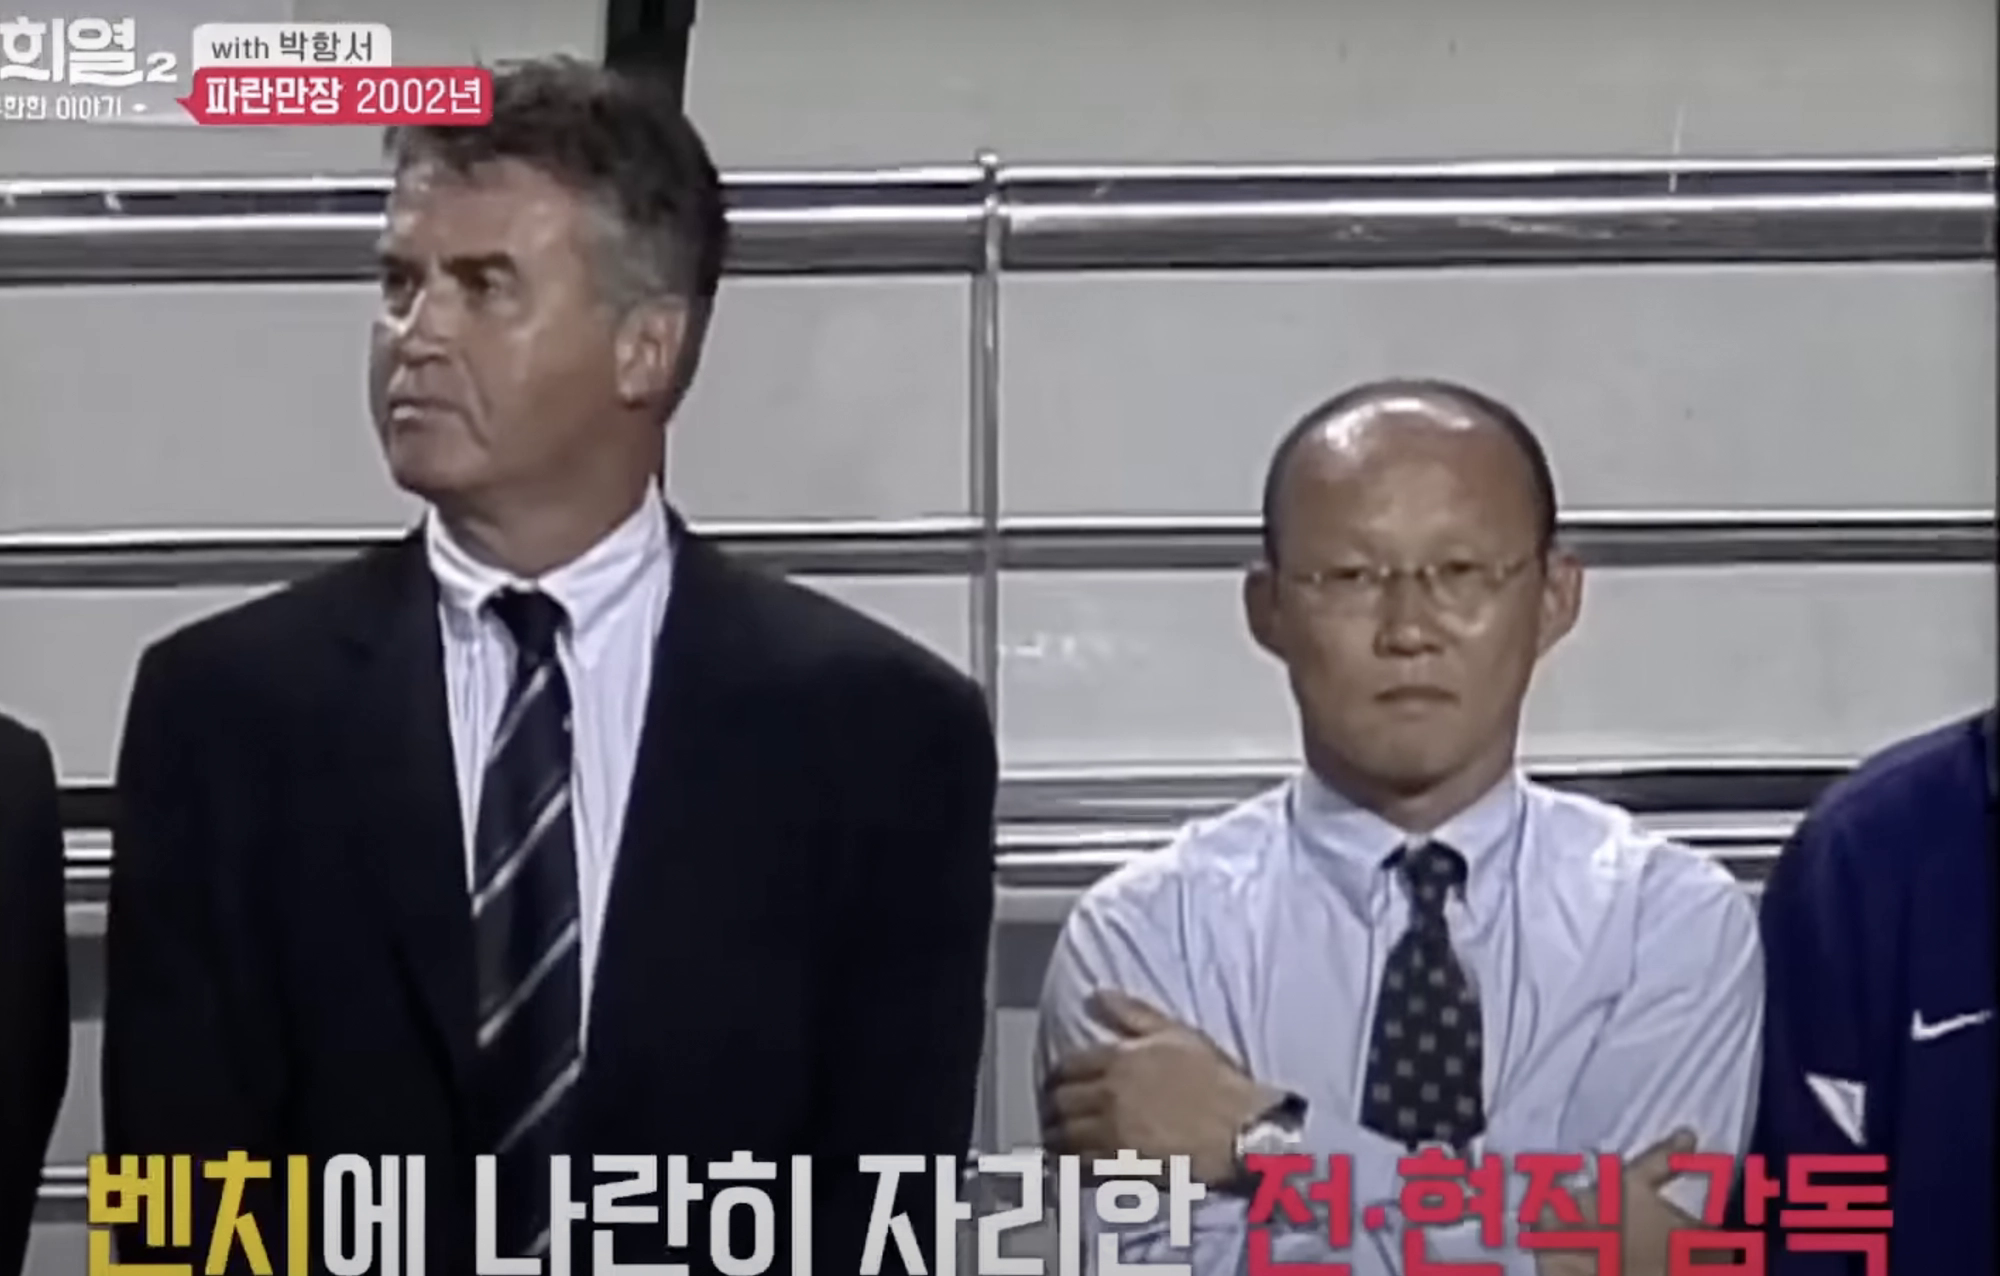 'Địa ngục' trong sự nghiệp của HLV Park Hang-seo - Ảnh 1.